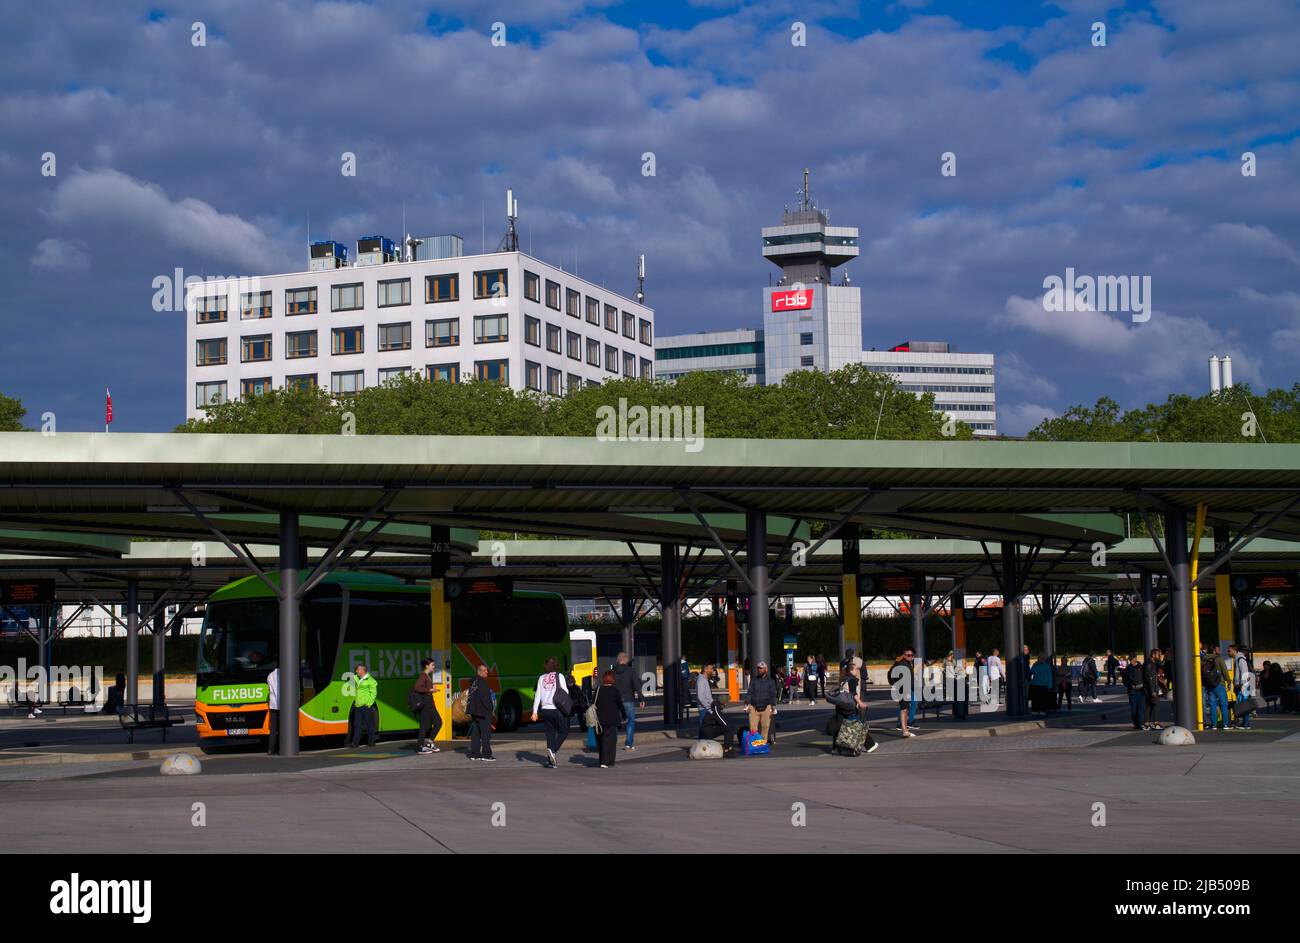 Estación central de autobuses ZOB, Flixbus Reisebus Messedamm, detrás de ella RBB de gran altura, Masurenallee, Westend, Charlottenburg, Berlín, Alemania Foto de stock